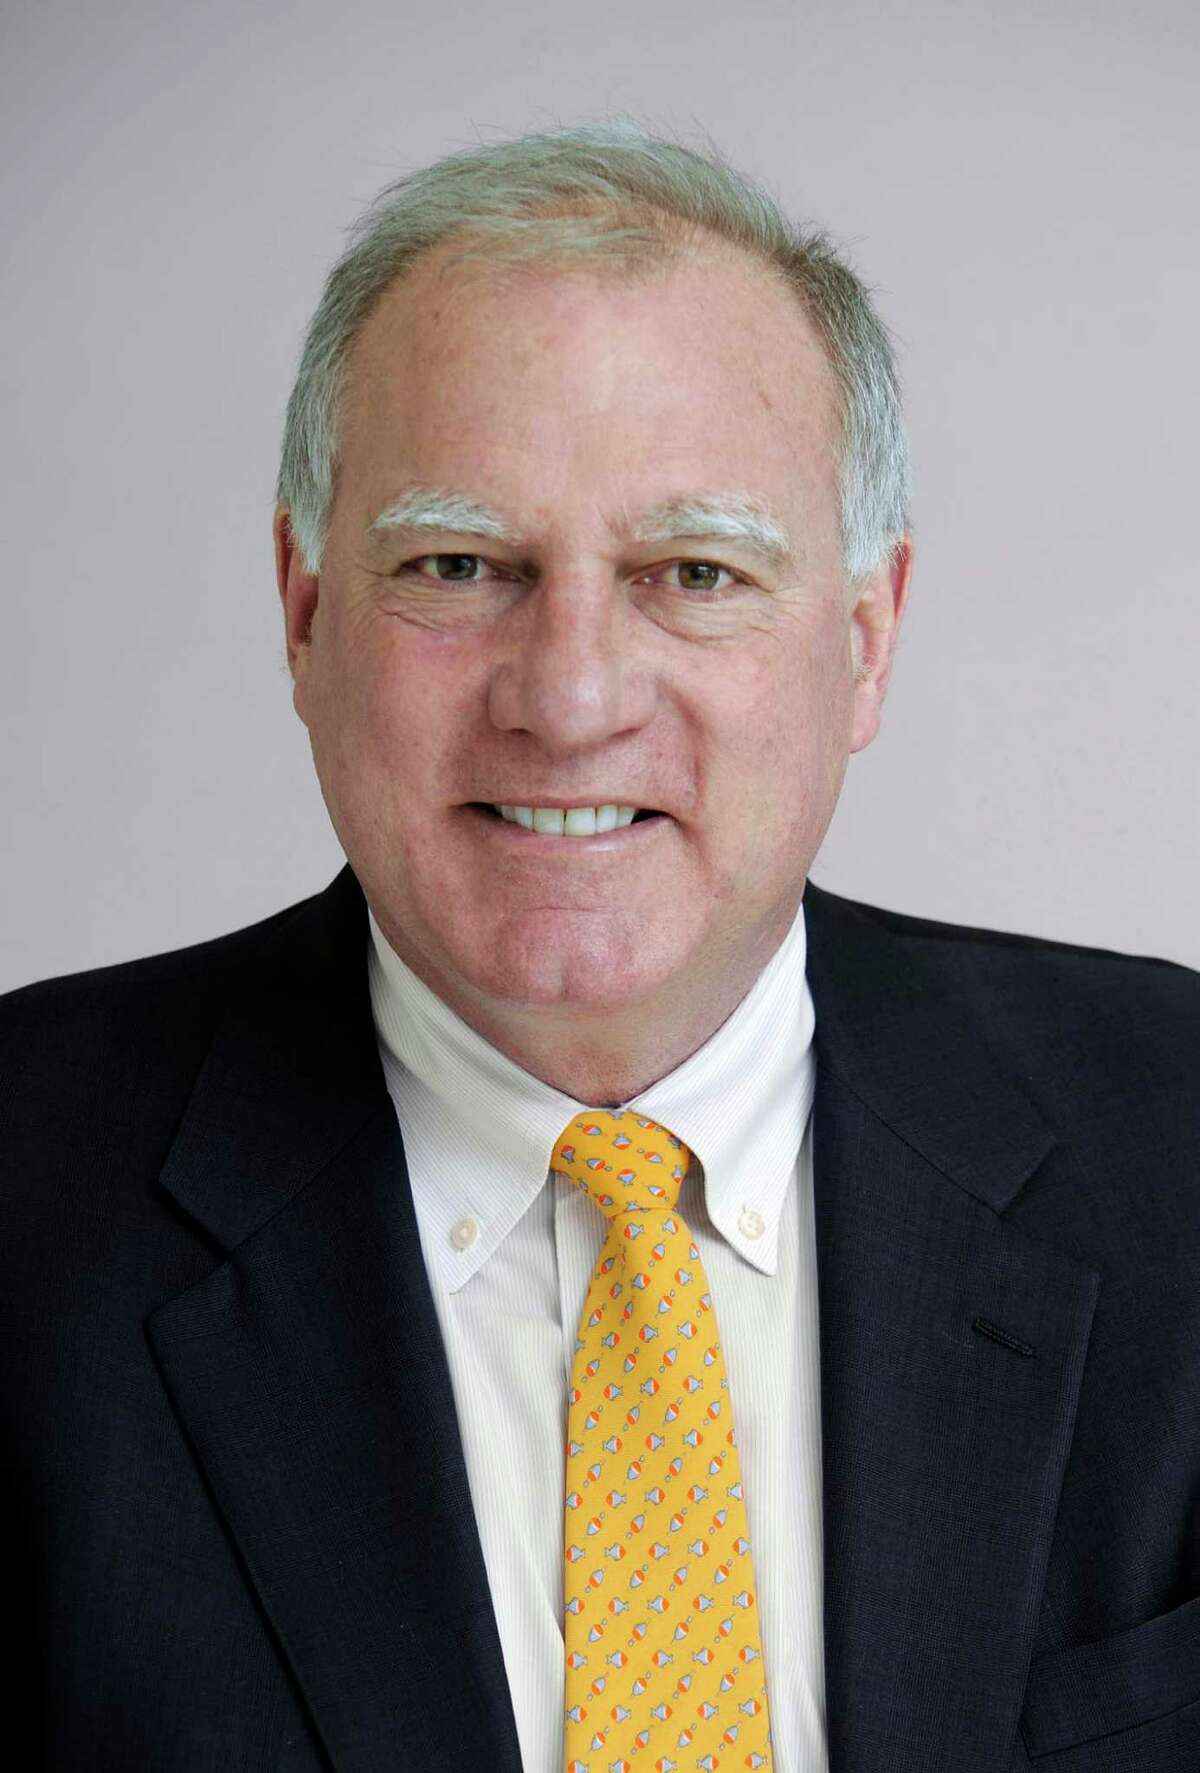 CT Attorney General George Jepsen